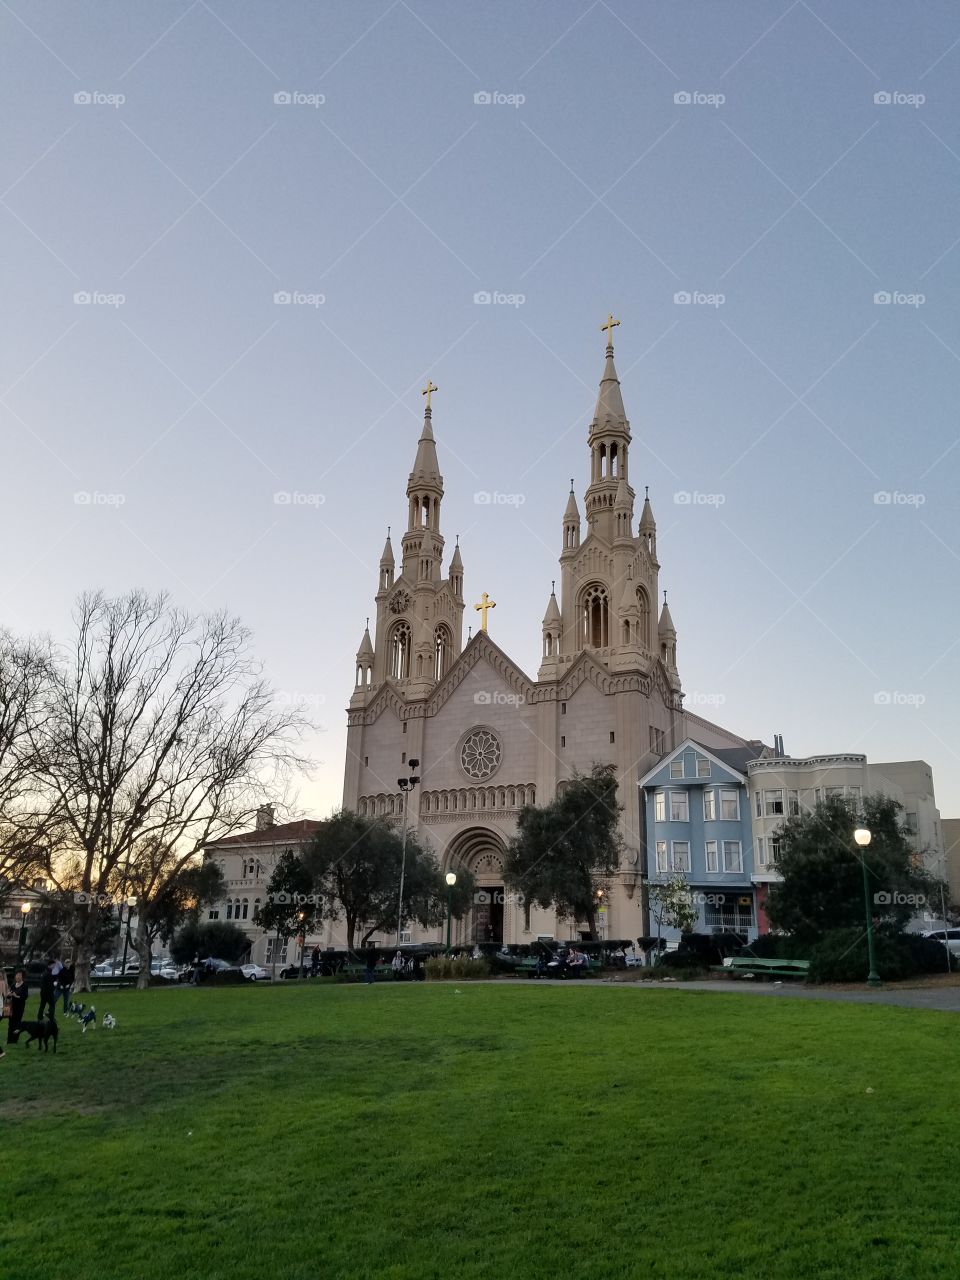 San Francisco Church